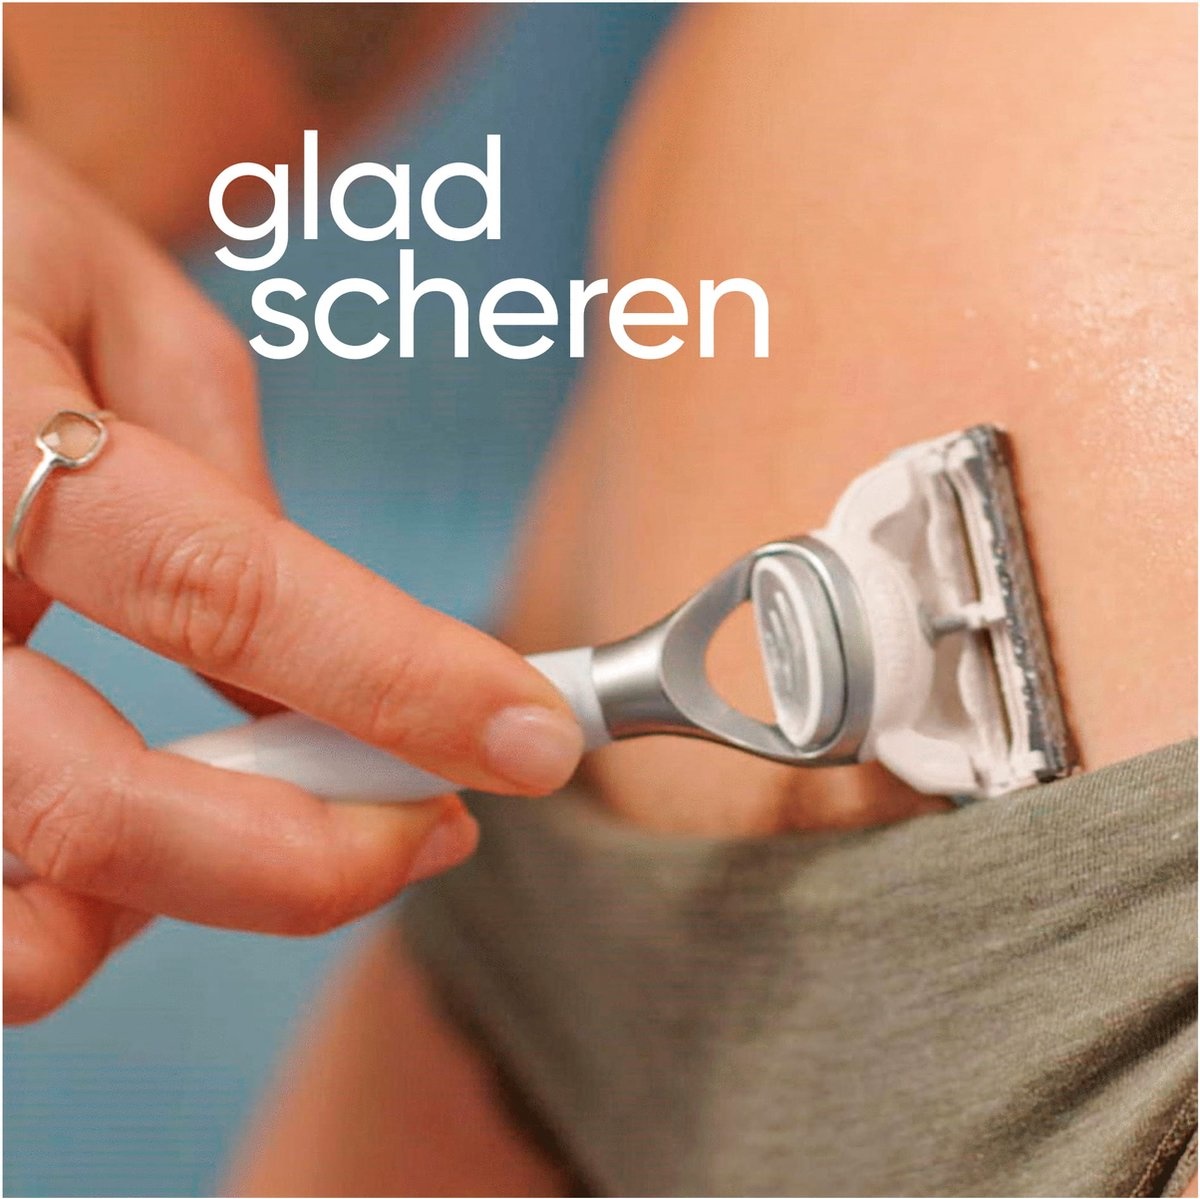 Système de rasage Gillette Venus - Pour la peau et les poils pubiens pour femme - 2 lames